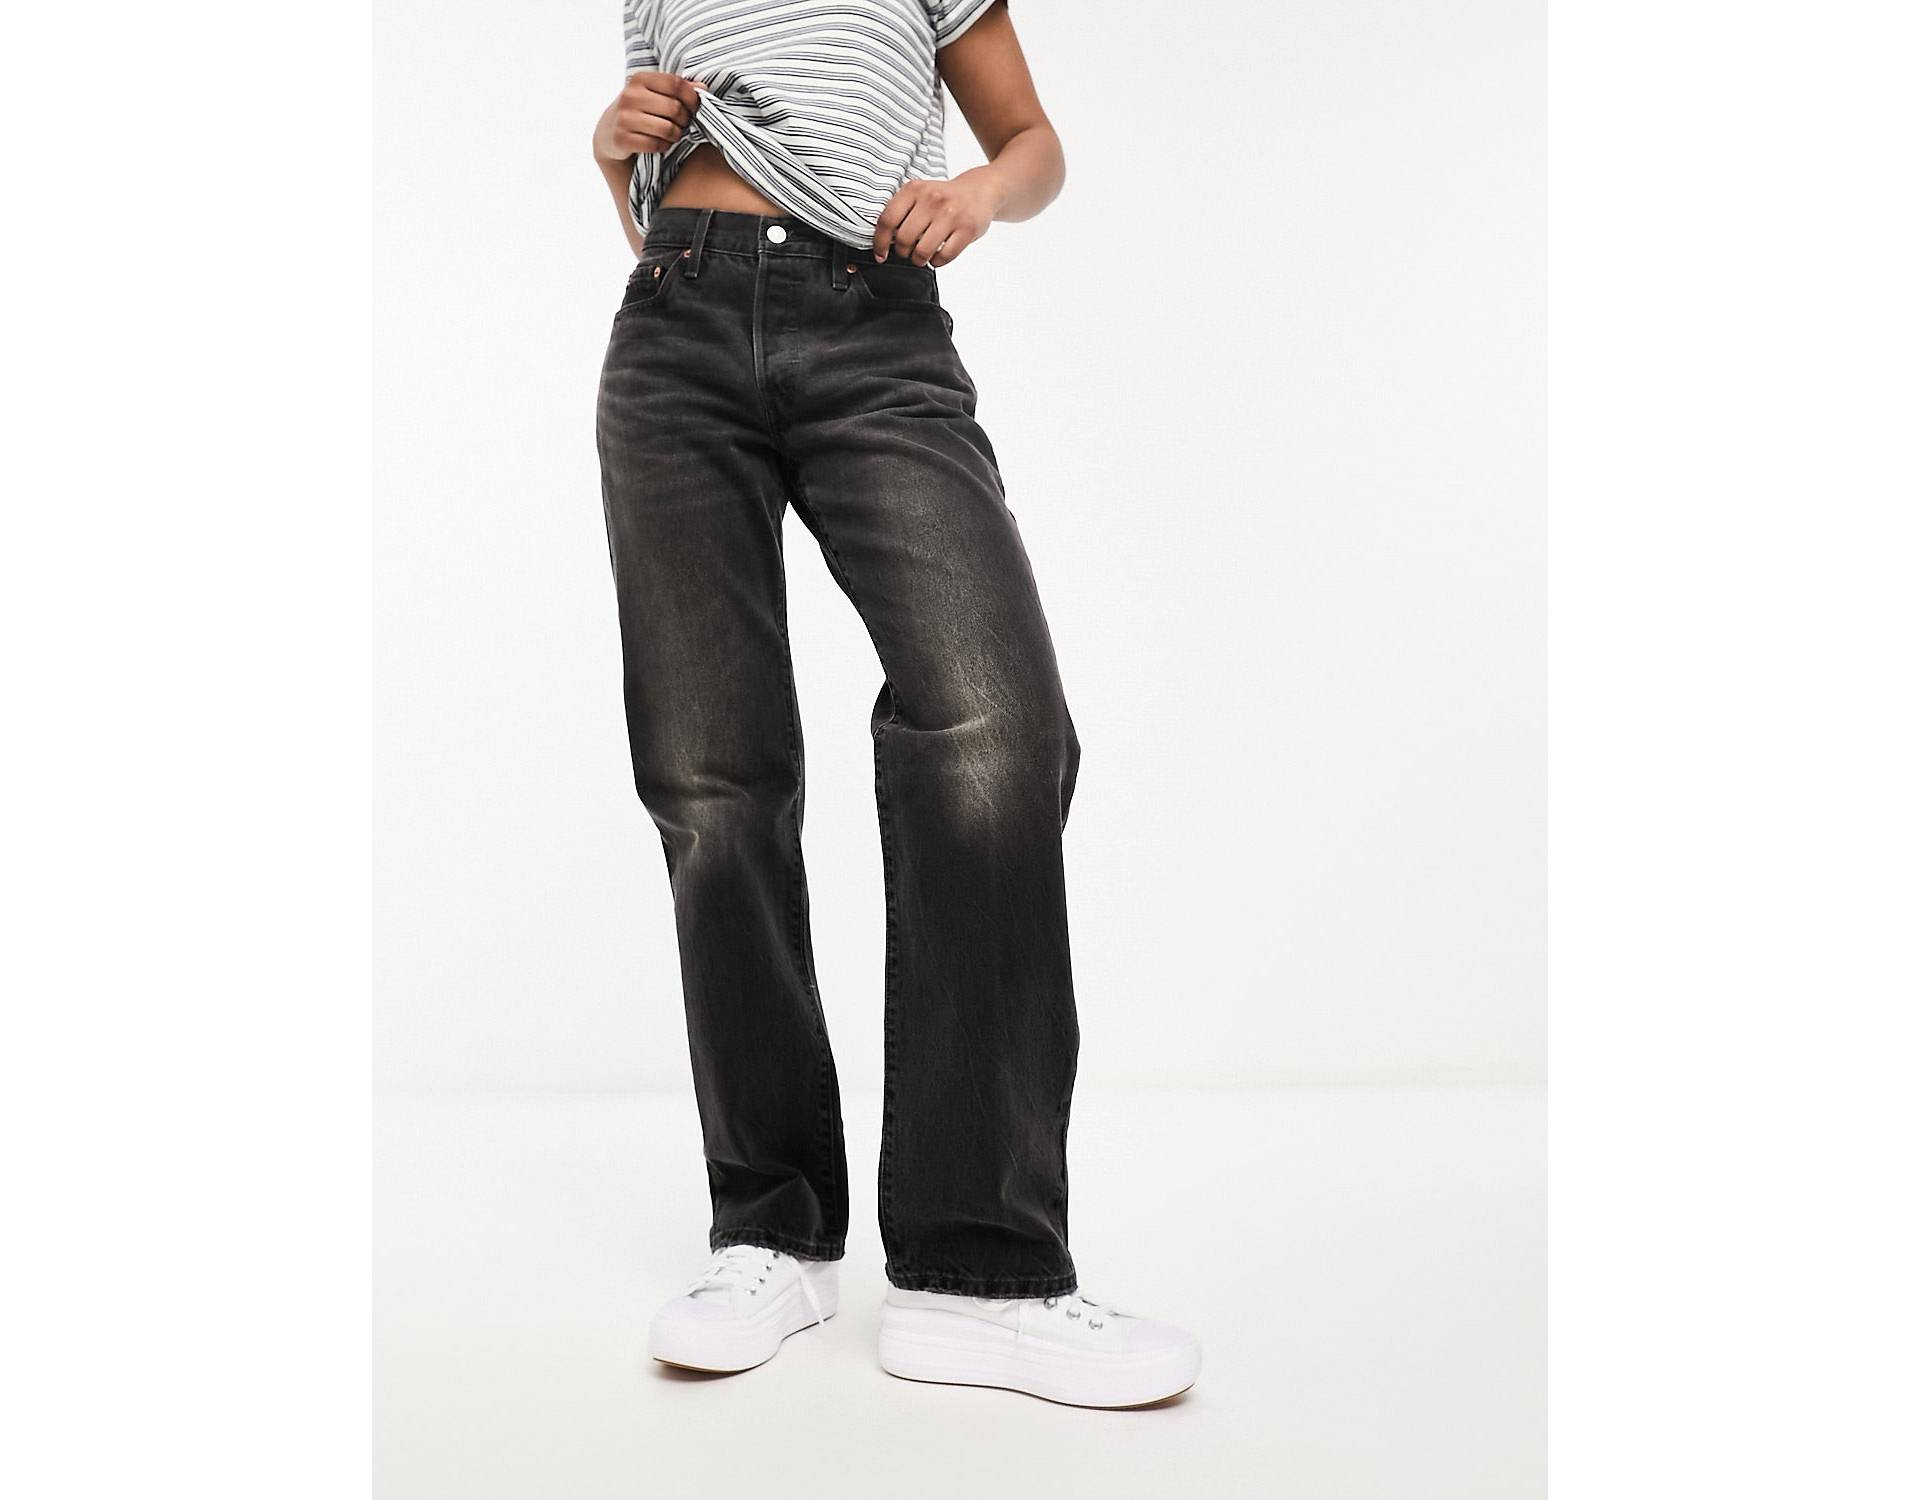 Черные джинсы прямого кроя Levi's 501 90-х годов